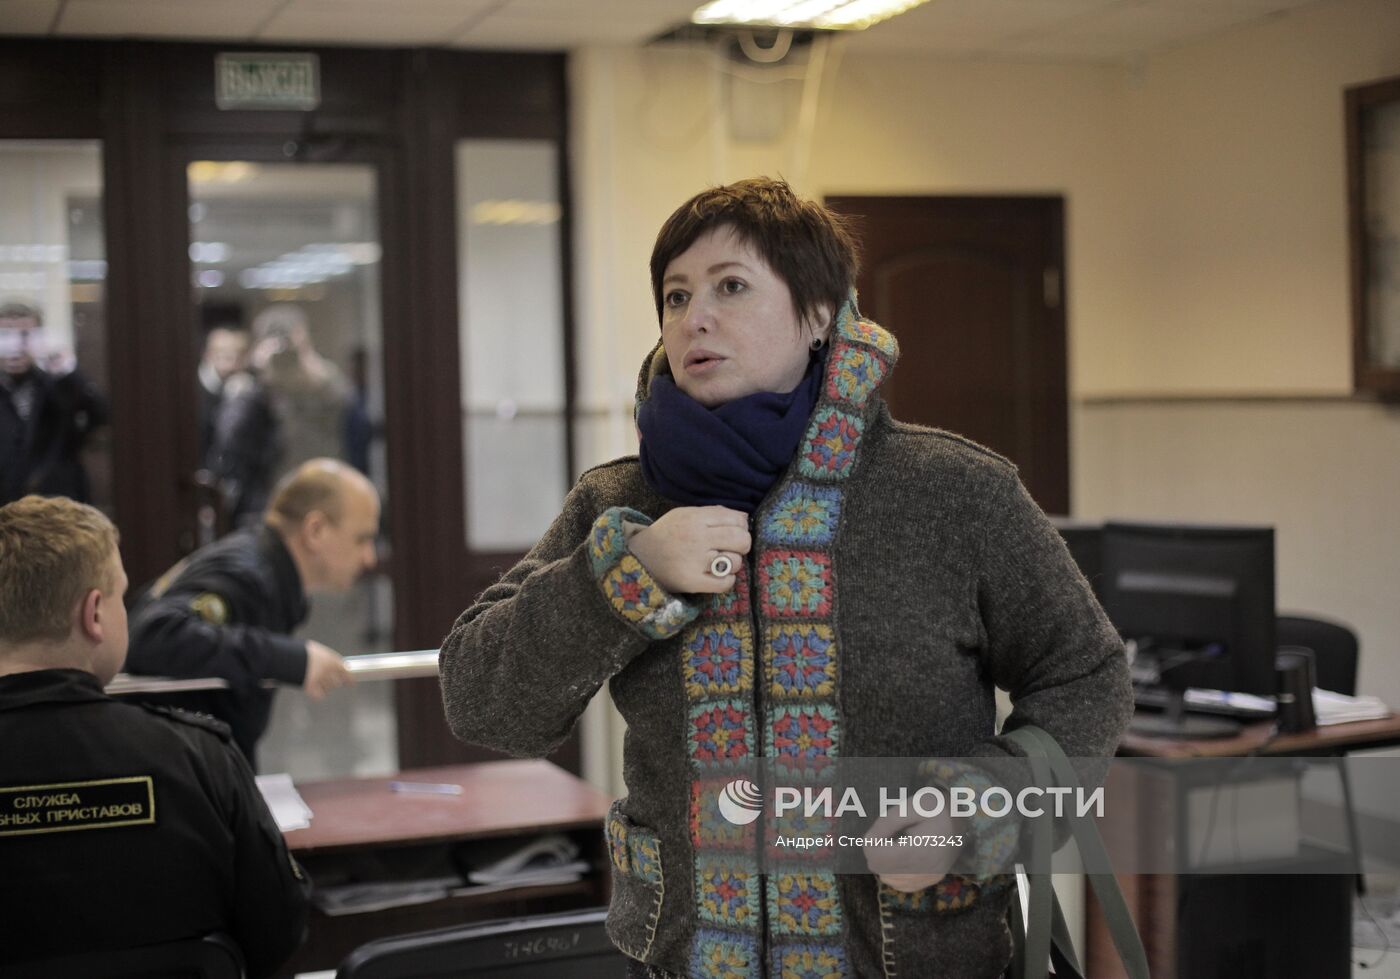 Журналистка Ольга Романова задержана в здании Пресненского суда